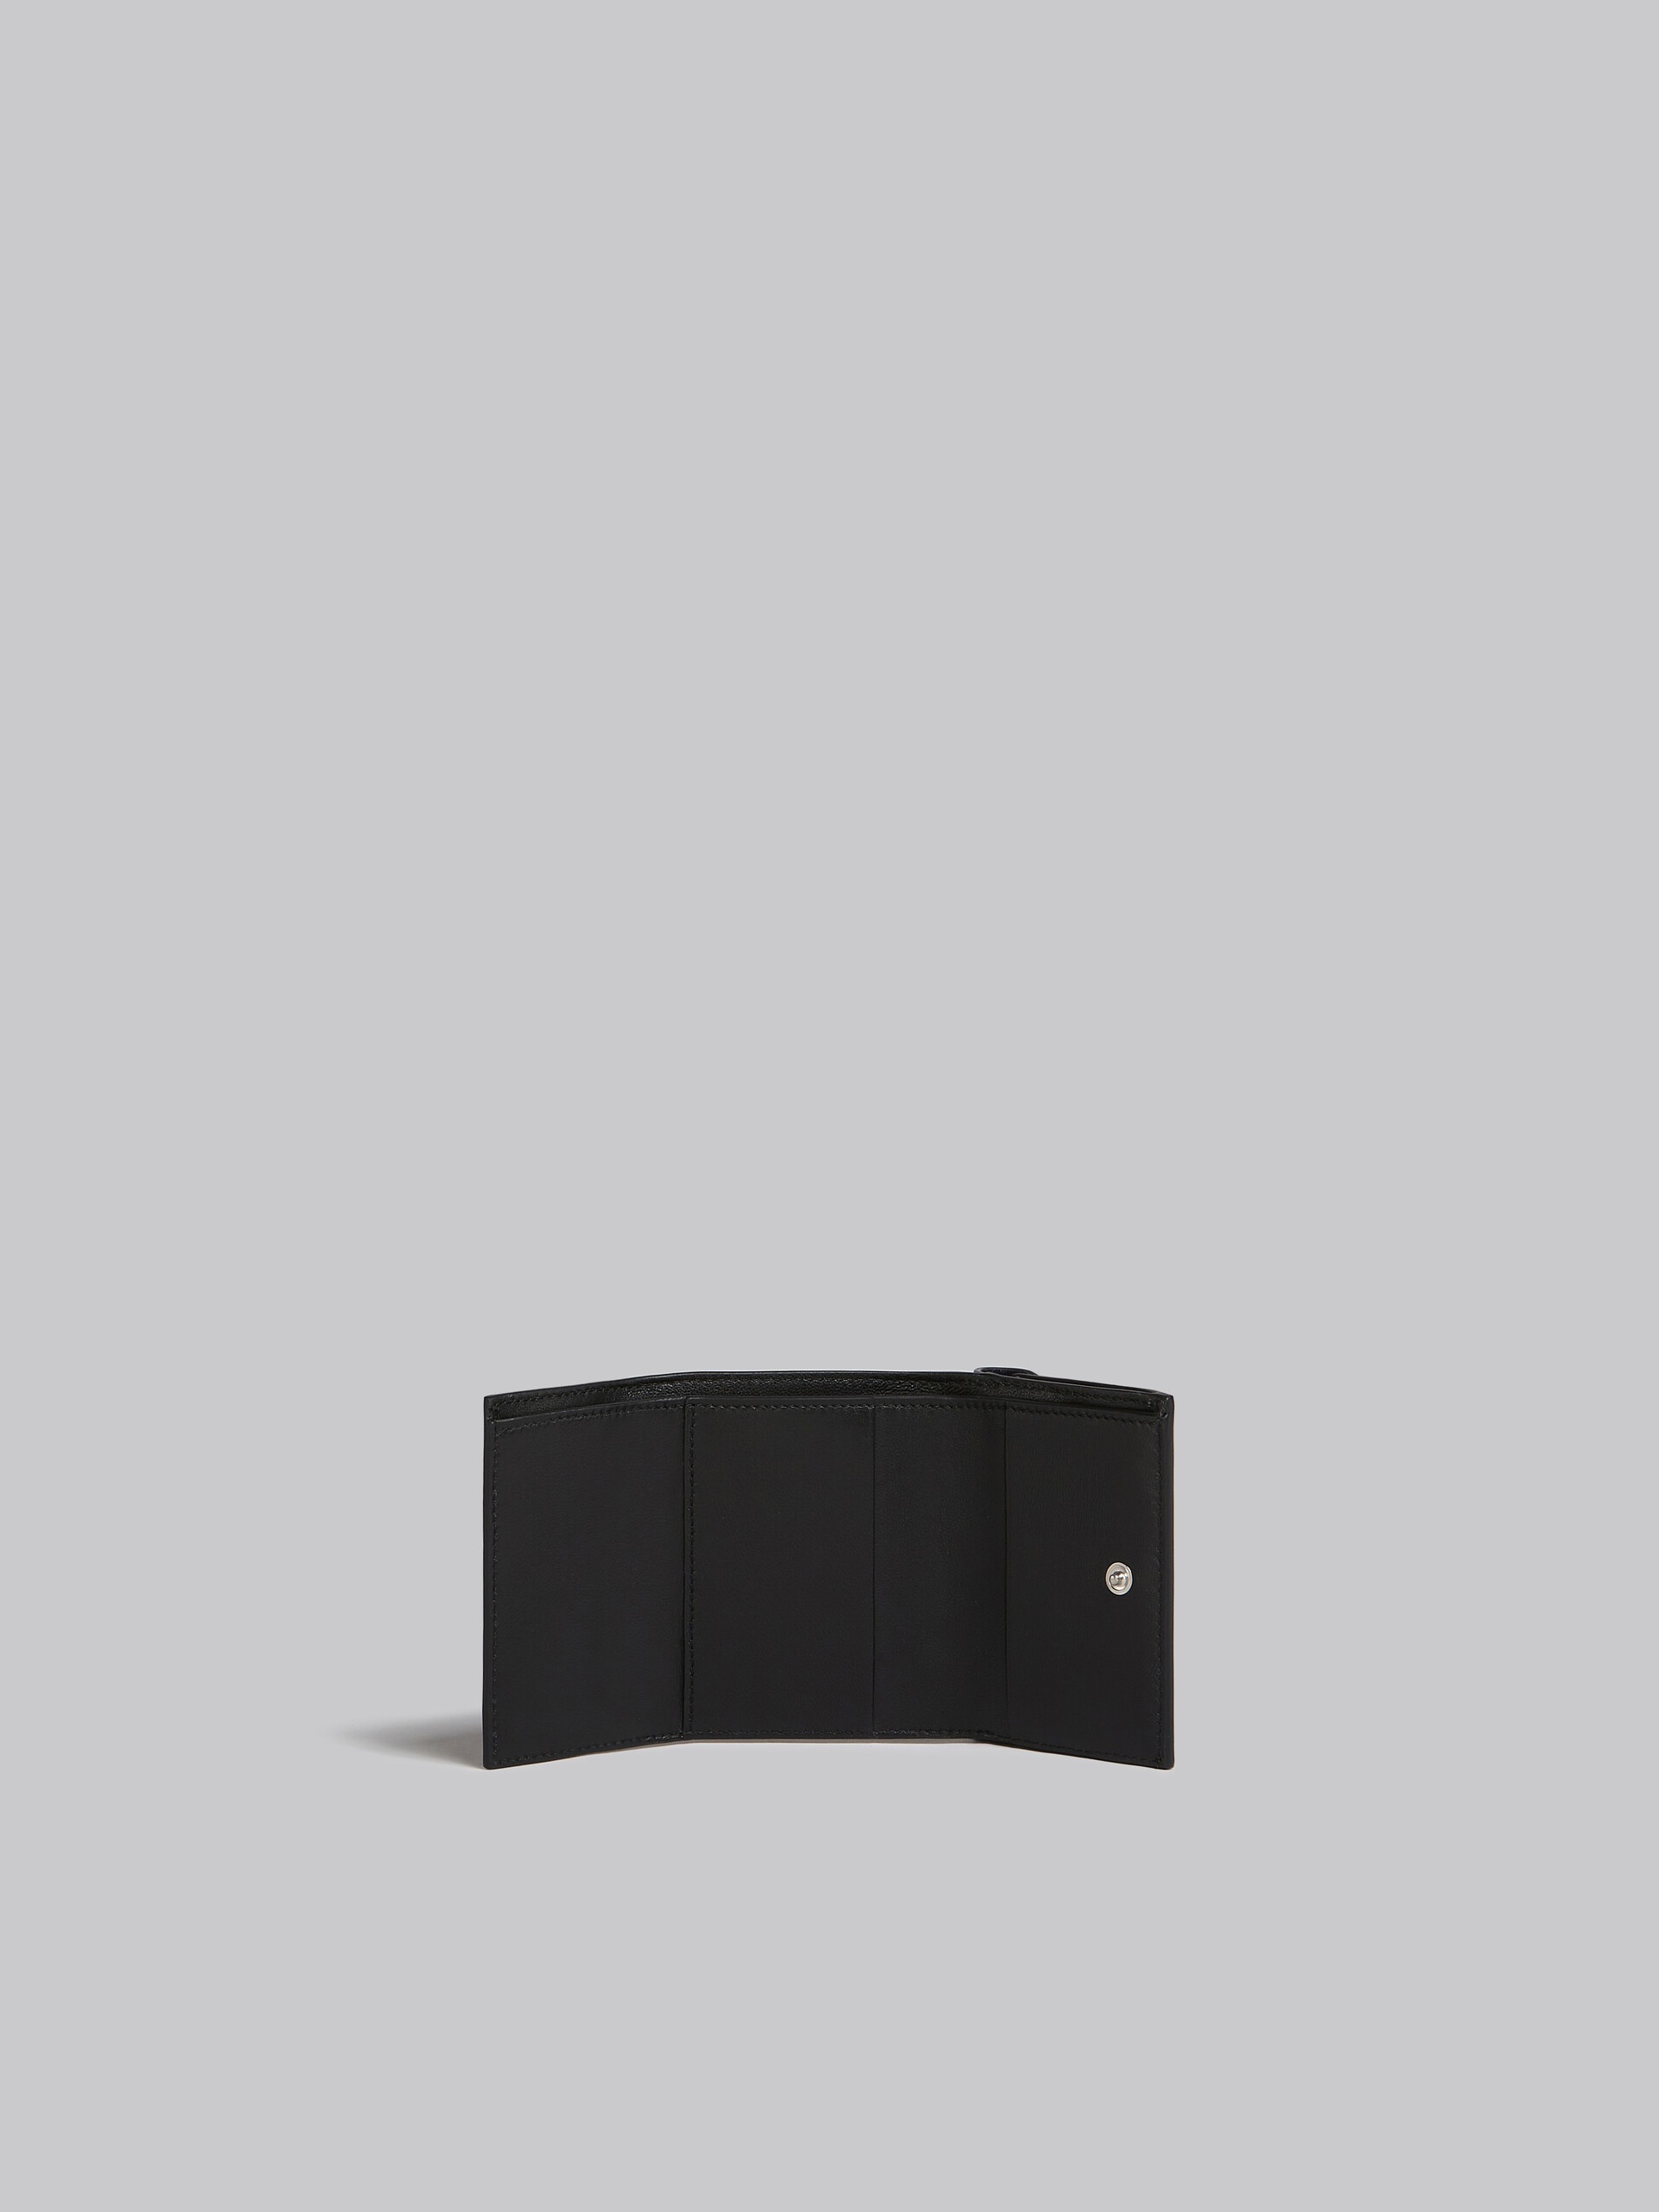 Dreifache Faltbrieftasche aus Leder in Marineblau und Schwarz - Brieftaschen - Image 2